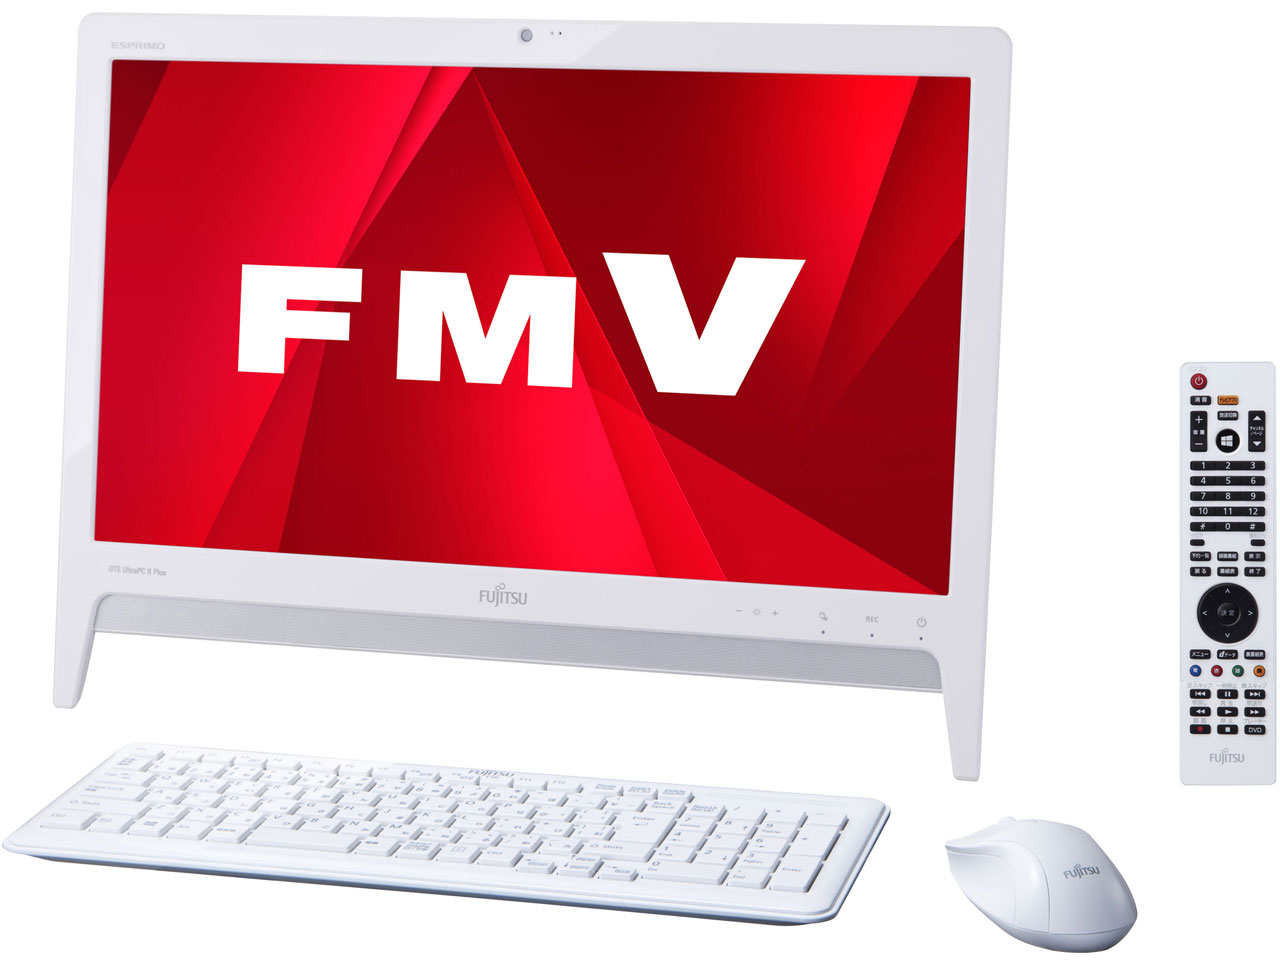 富士通FMV ESPRIMO デスクトップパソコン+office2013添付FMV ESPRIMO FMVE30KTW,FMVE30KTB